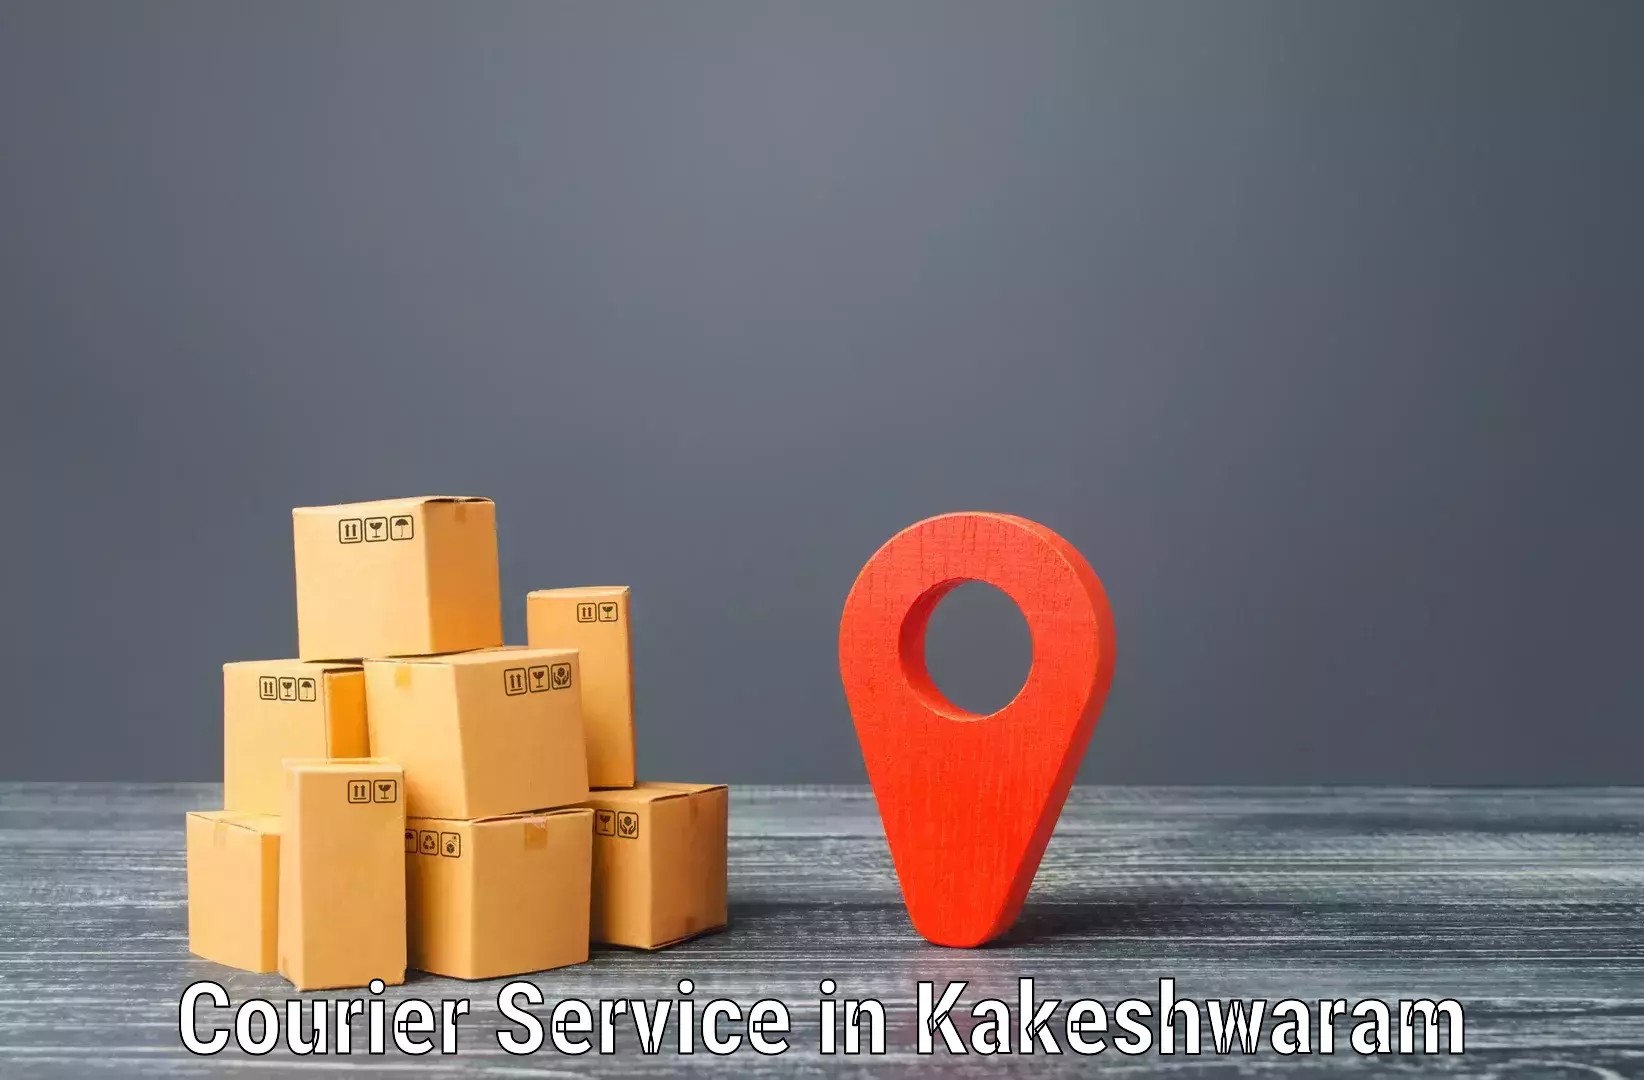 Courier service efficiency in Kakeshwaram